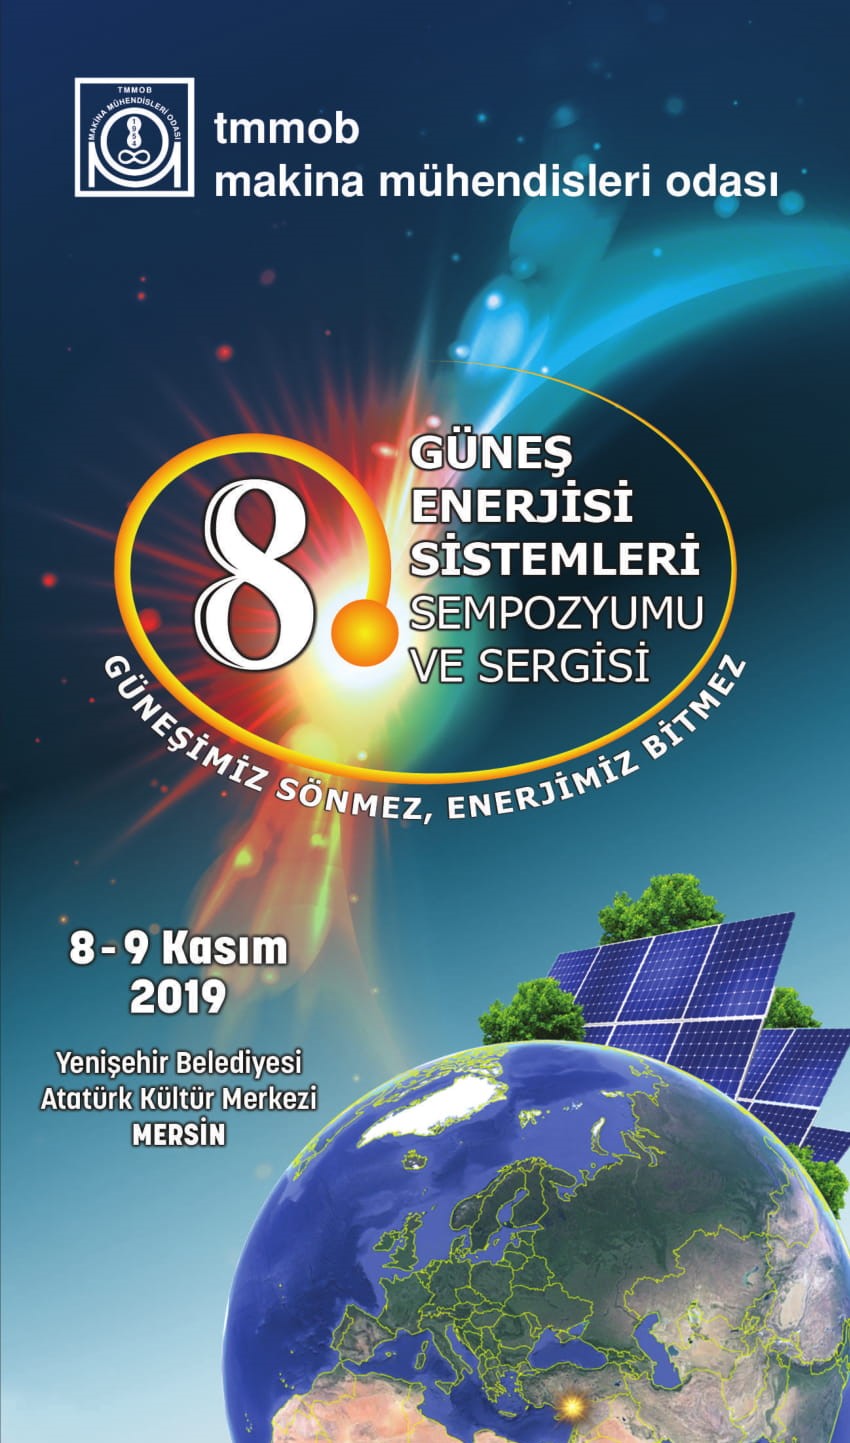 8. Güneş Enerjisi Sistemleri Sempozyumu ve Sergisi